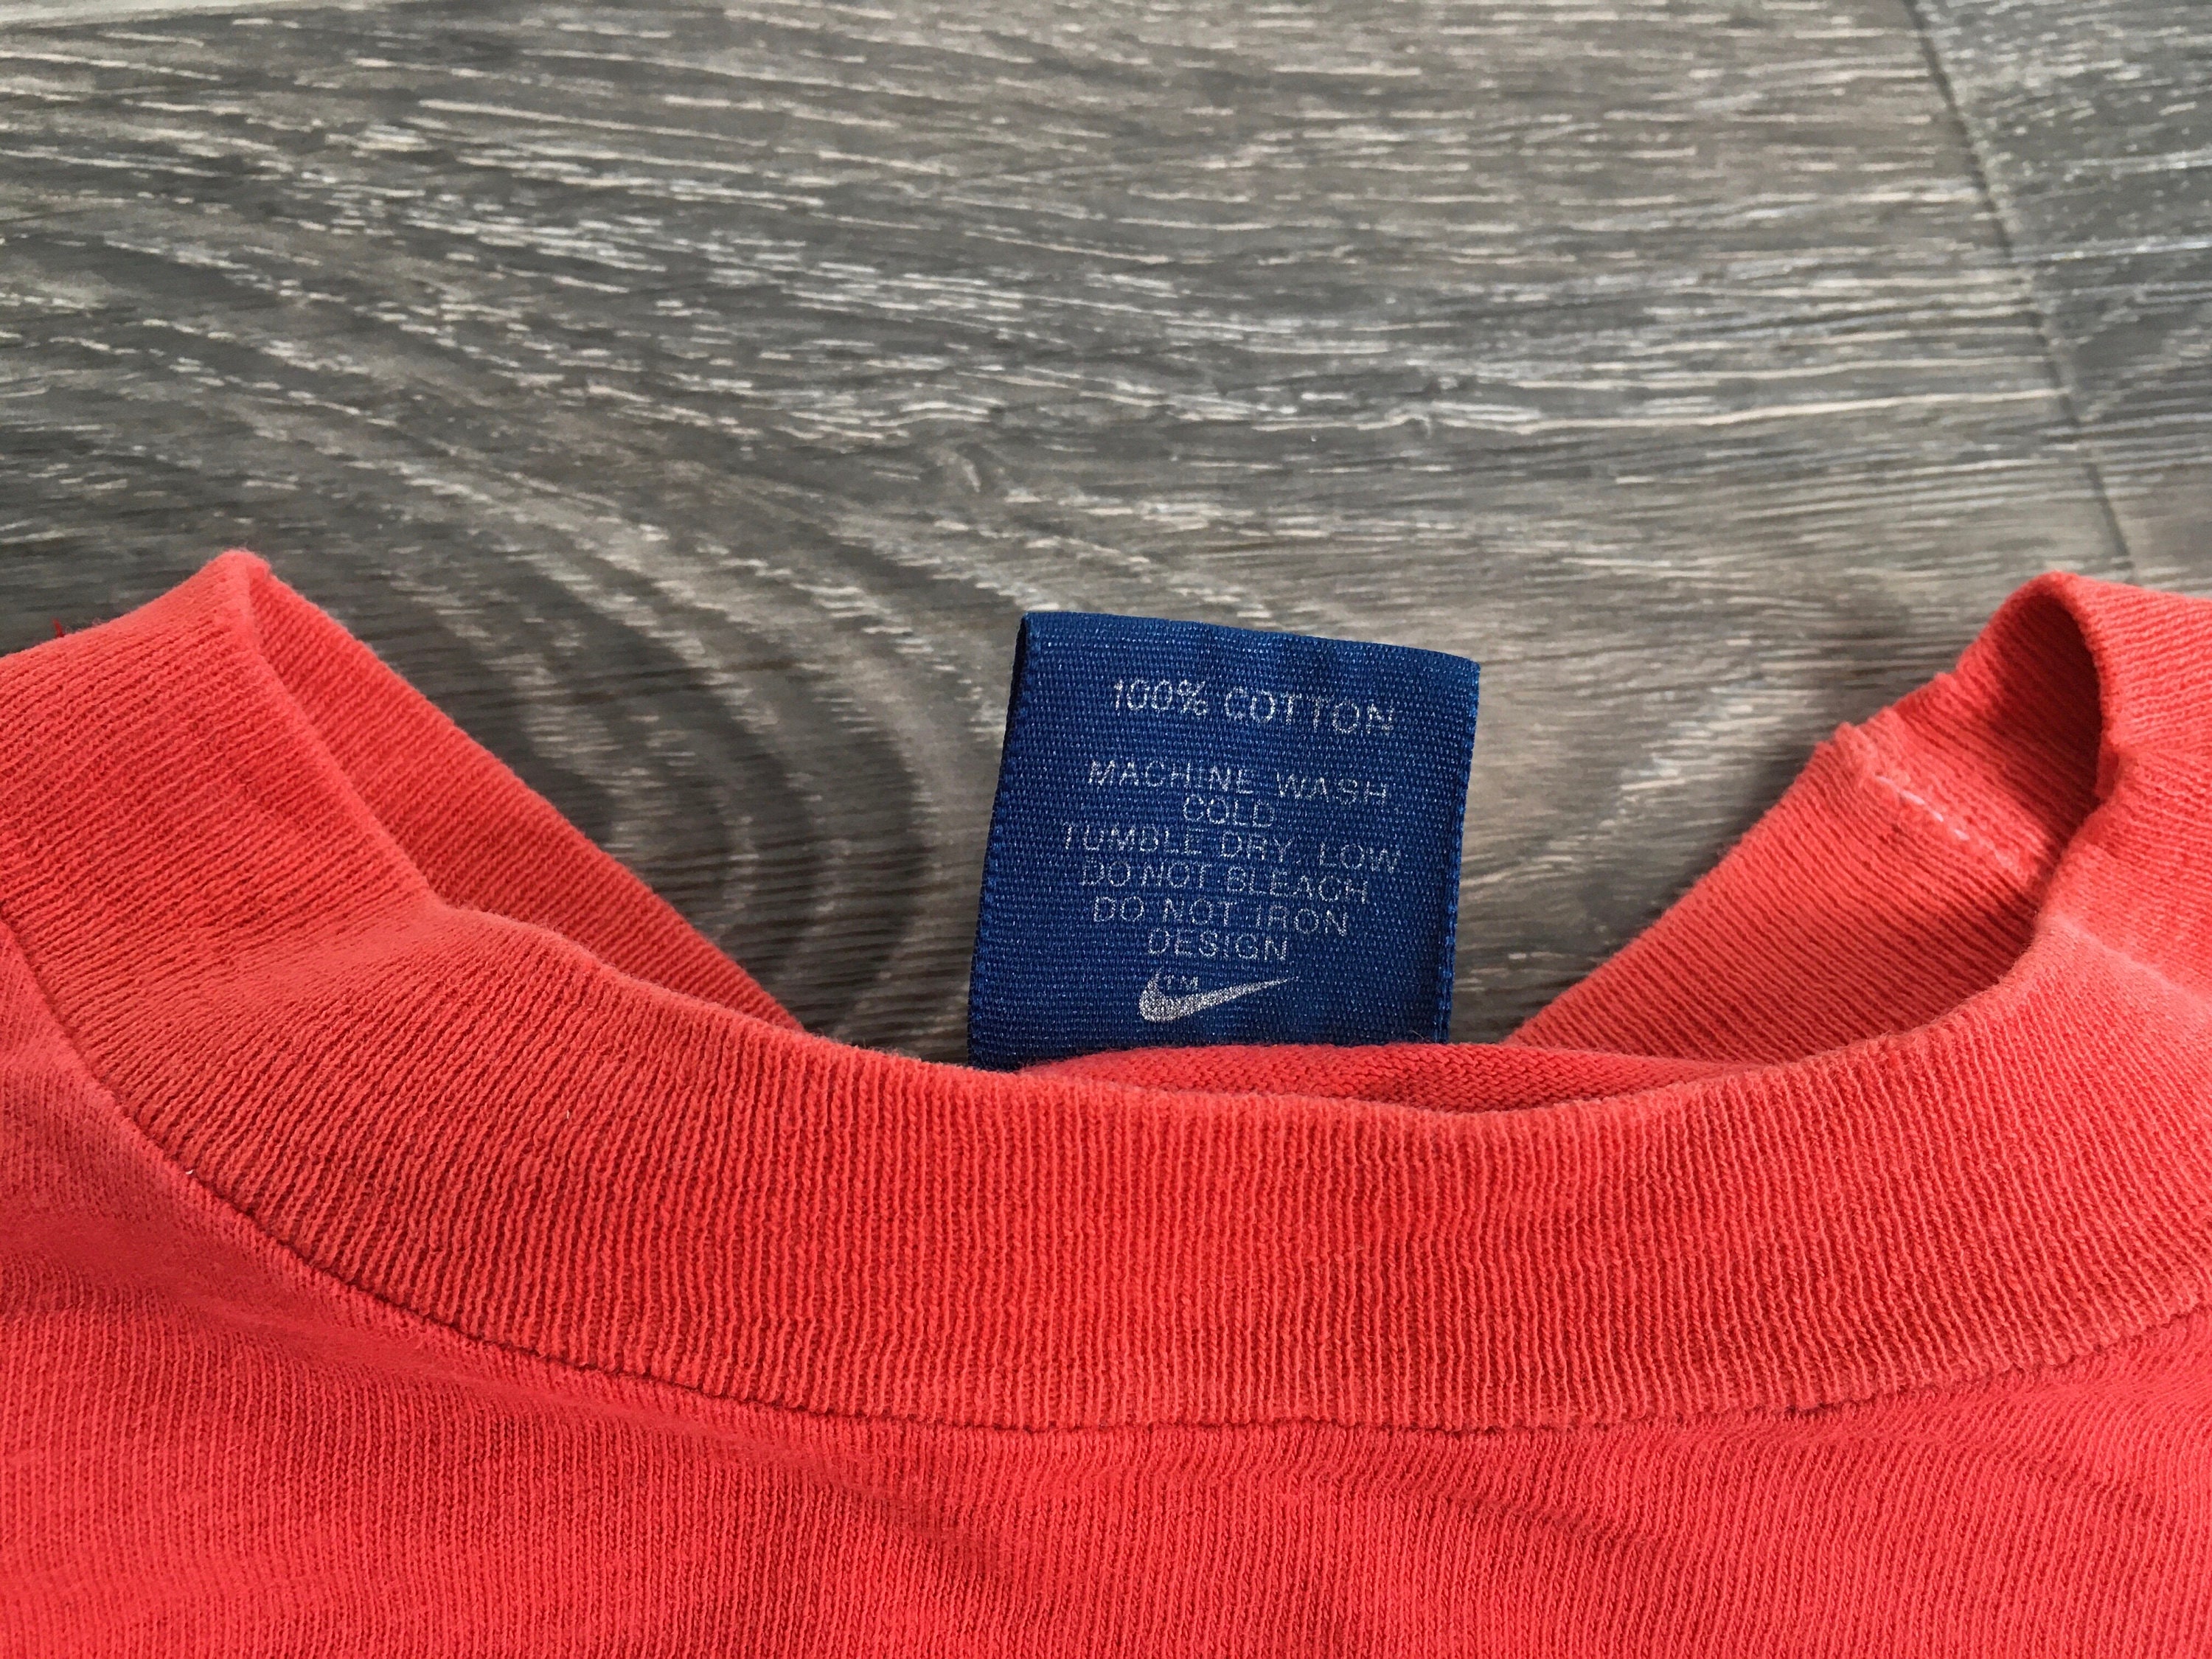 NIKE Shirt Vintage 1985 Blue Label Portland Marathon Finisher | Etsy